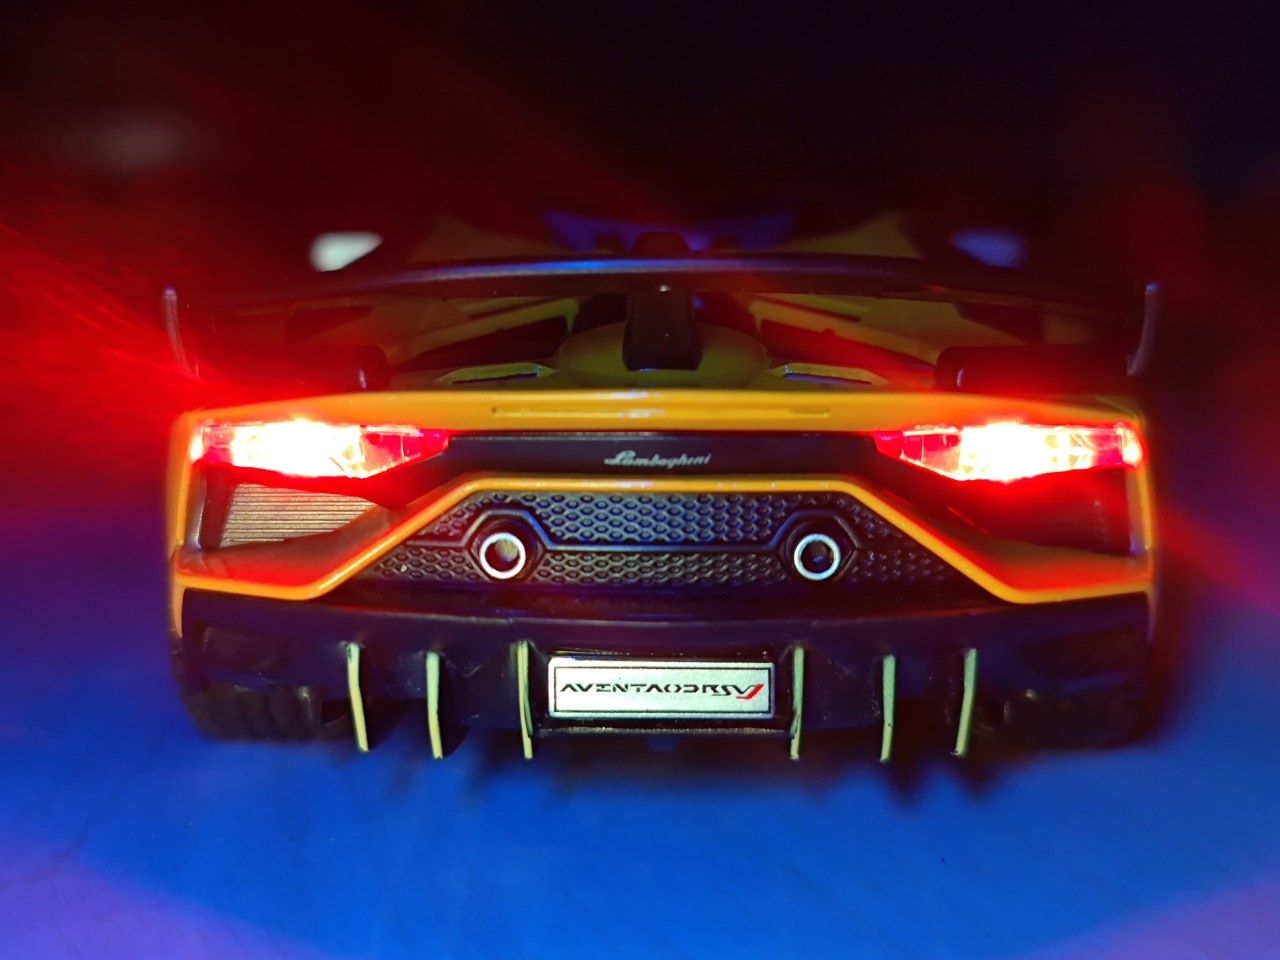 Lamborghini Aventador svj железная машинка 1:24 - Доставка